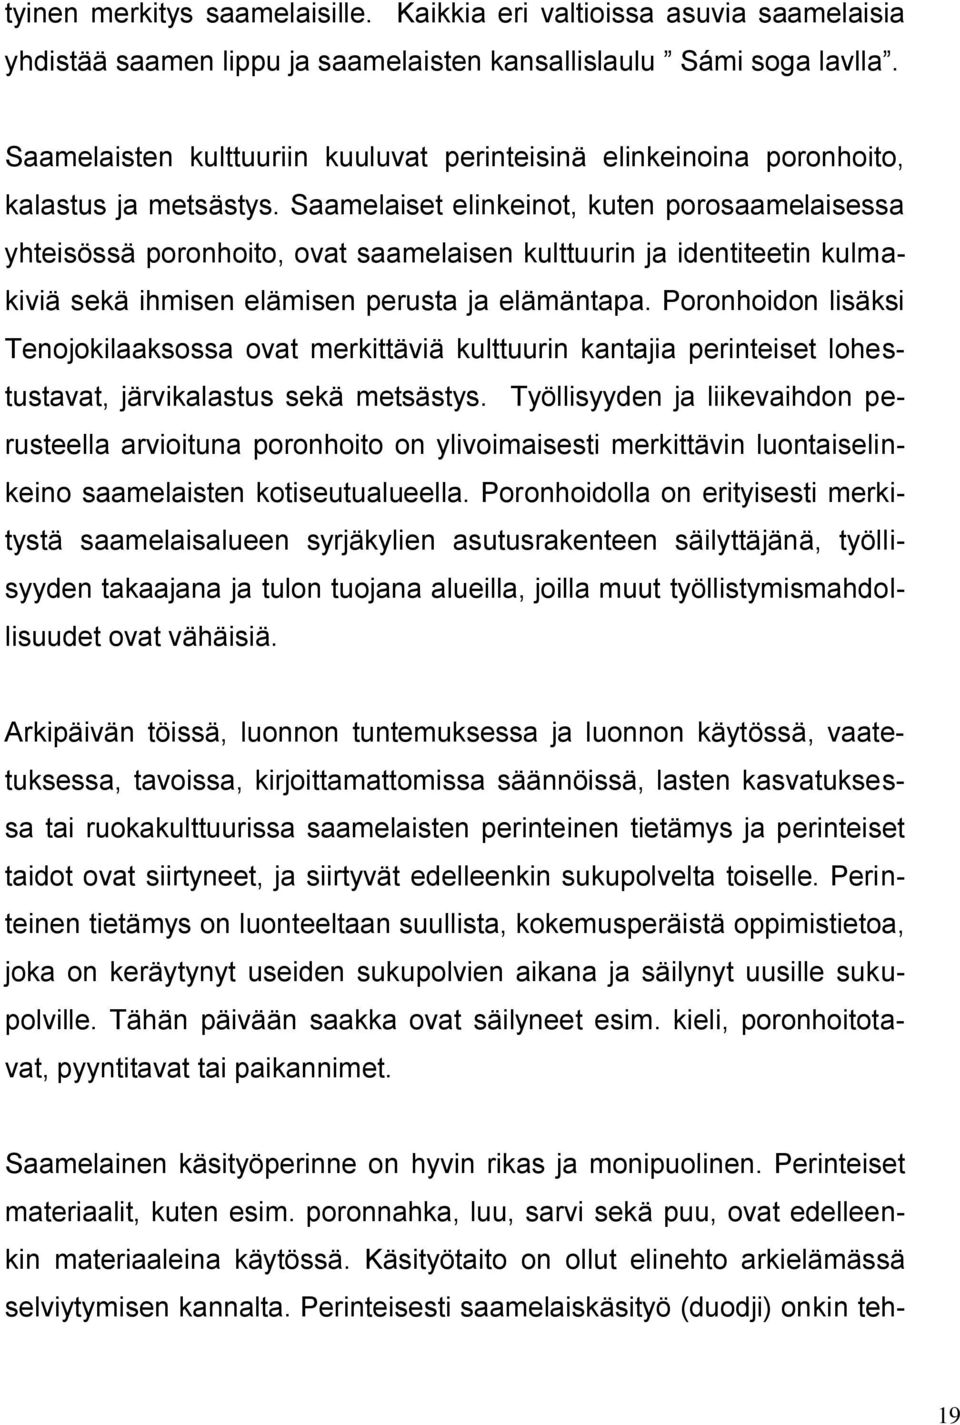 Saamelaiset elinkeinot, kuten porosaamelaisessa yhteisössä poronhoito, ovat saamelaisen kulttuurin ja identiteetin kulmakiviä sekä ihmisen elämisen perusta ja elämäntapa.